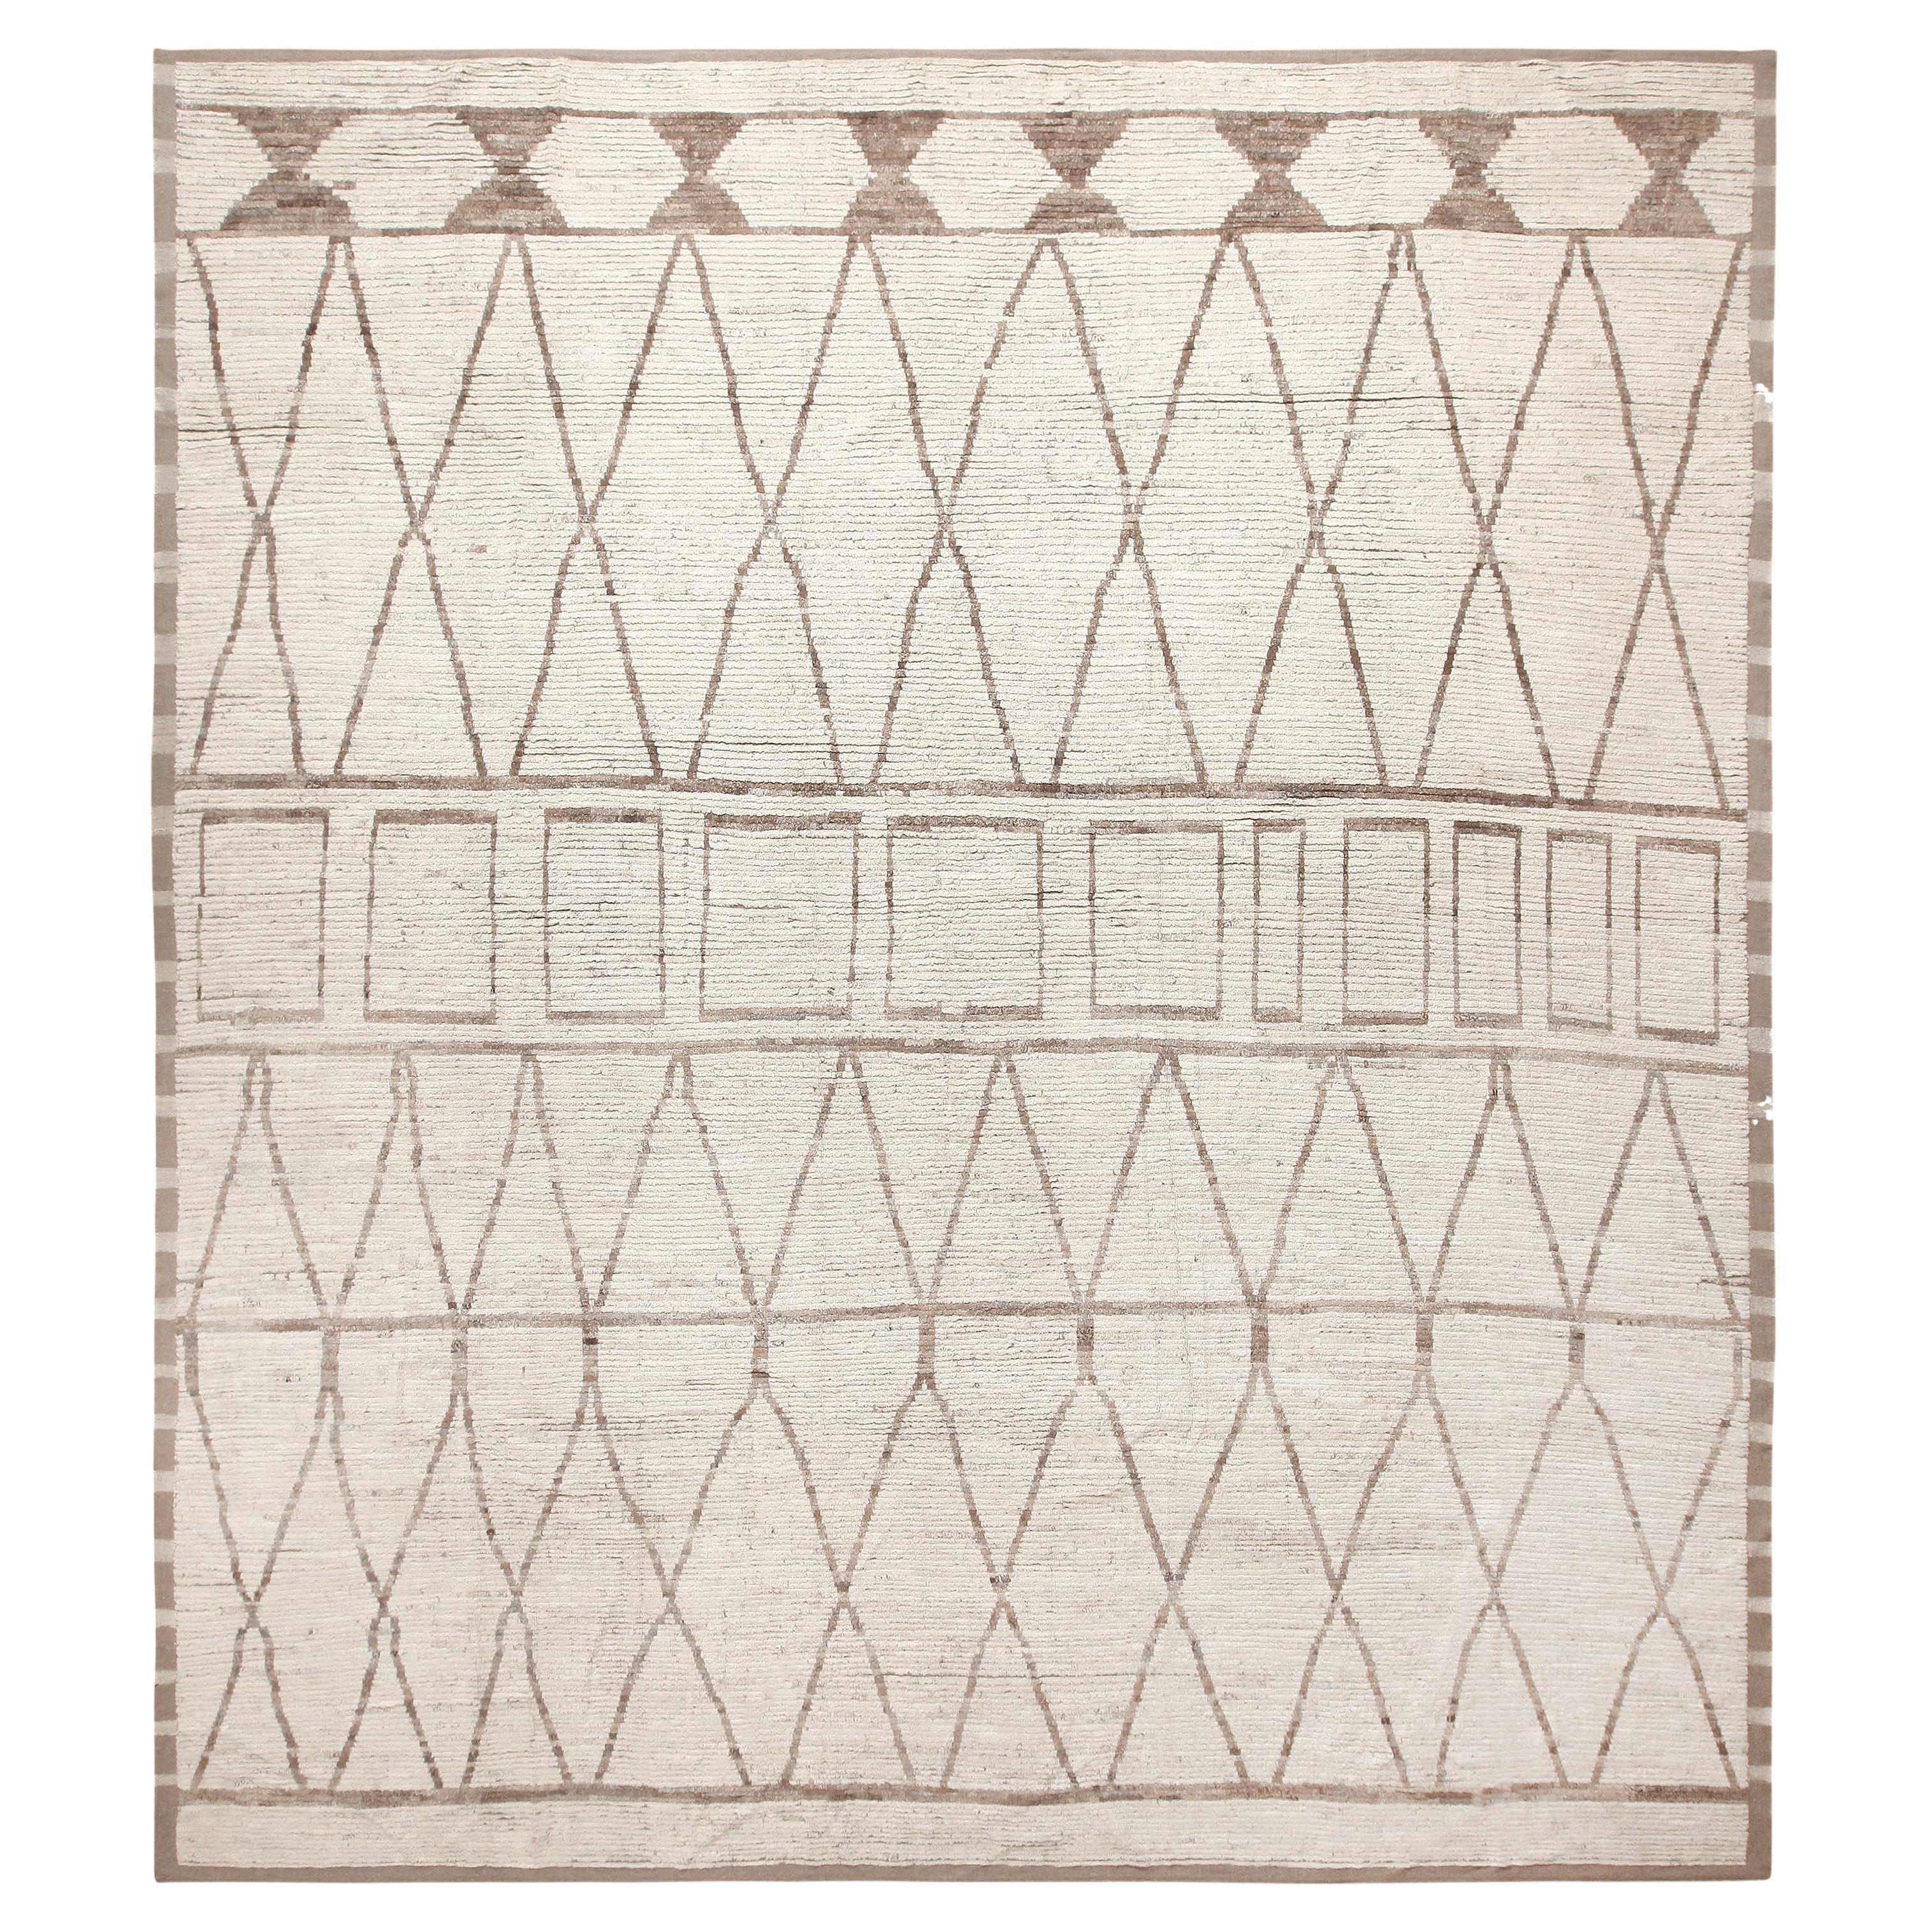 Nazmiyal Kollektion Geometrischer elfenbeinfarbener moderner dekorativer Teppich 13'2" x 14'6"